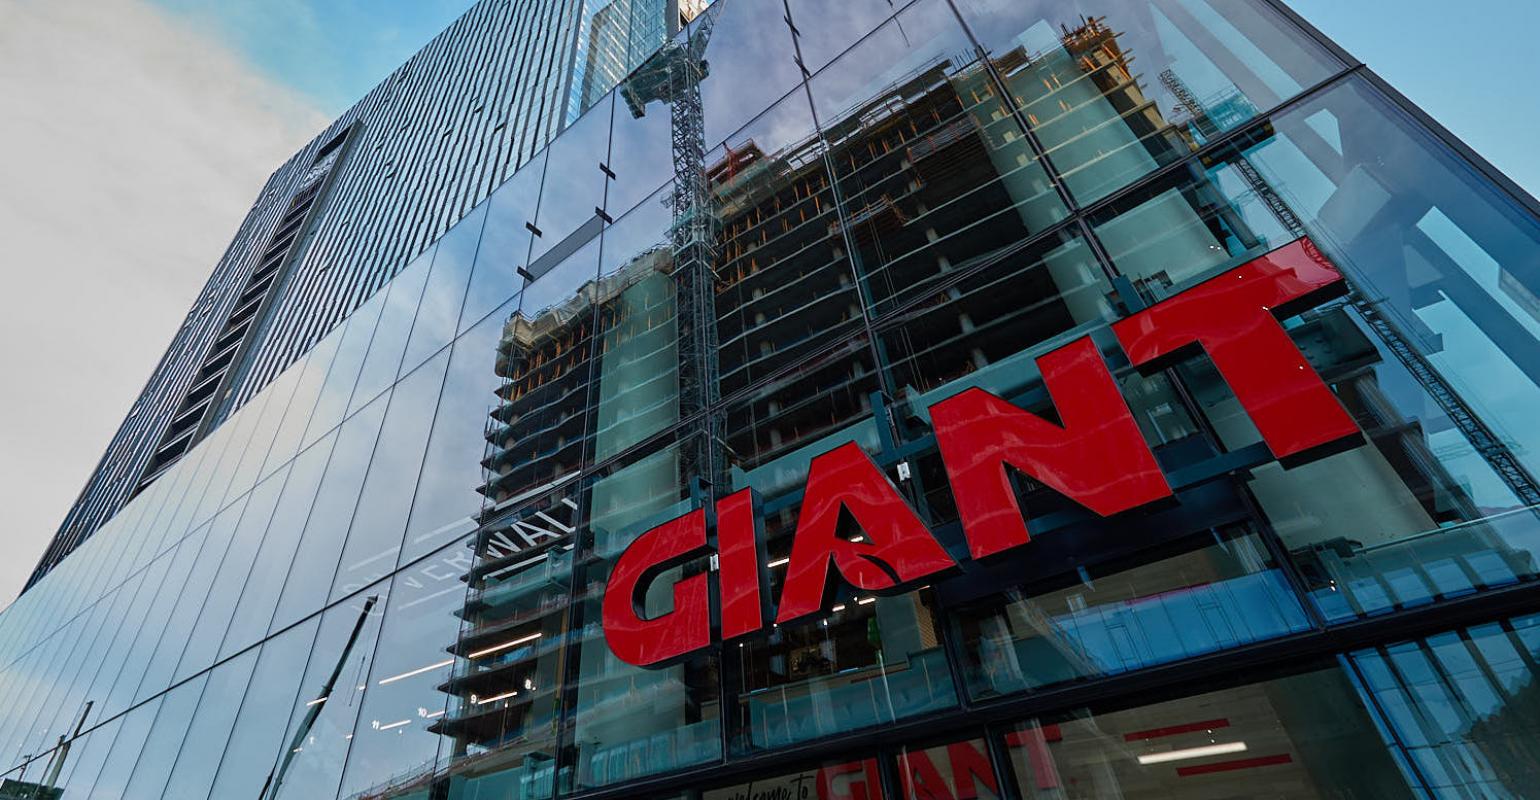 The Giant Company makes a splash in Philadelphia